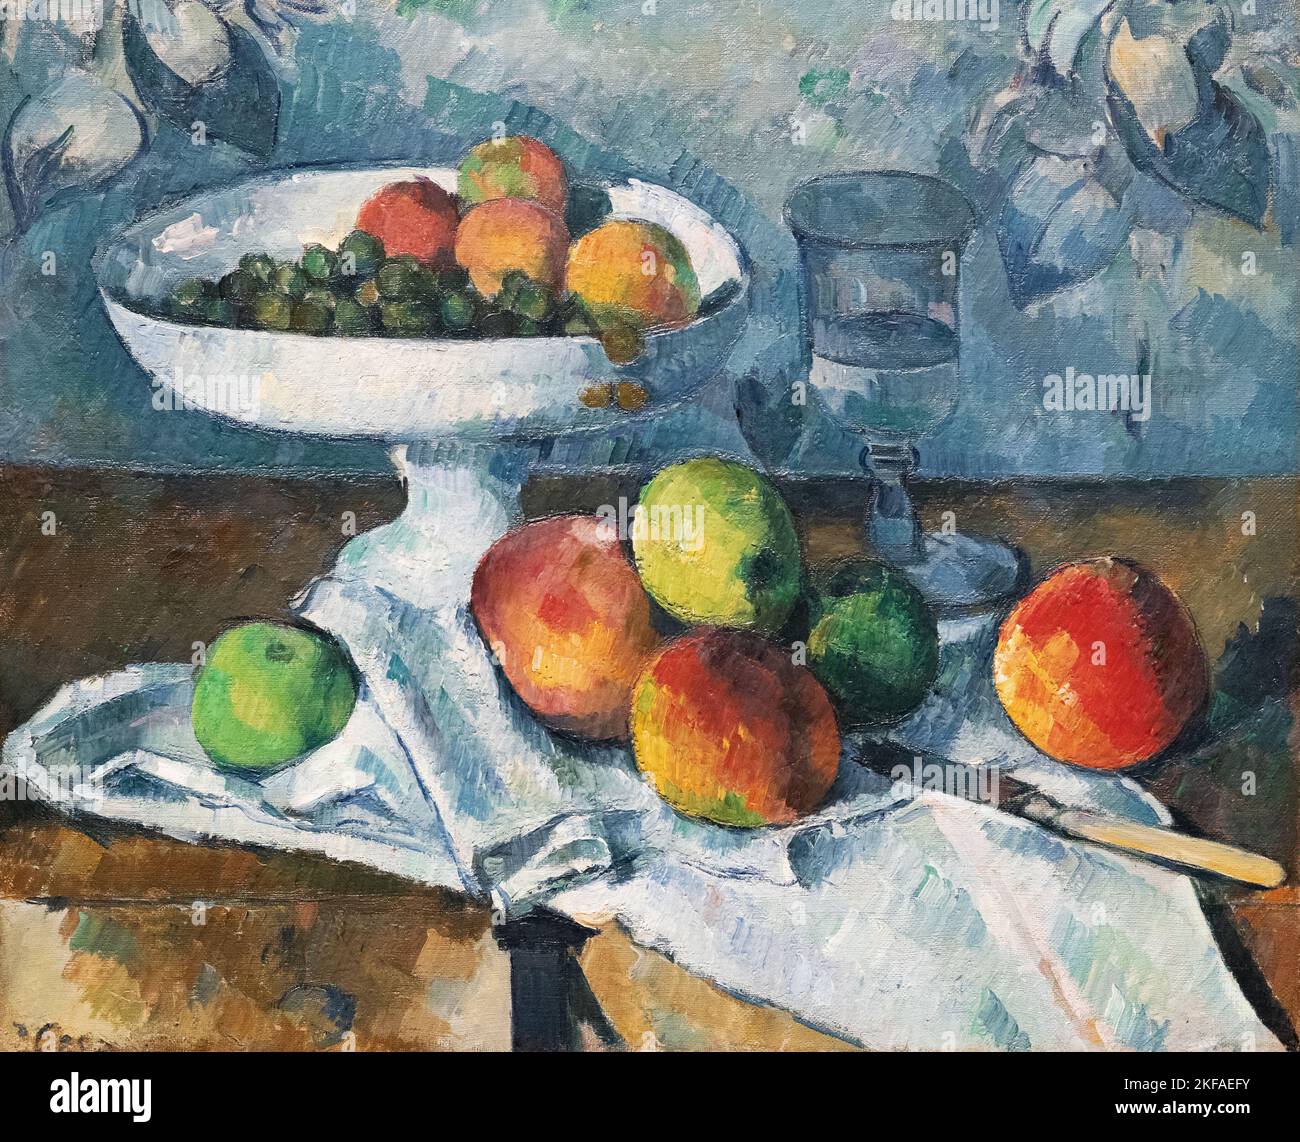 Stillleben mit Obstschale, 1879-80; Paul Cezanne Malerei, Öl auf Leinwand, Post Impressionismus Kunst, 1800s, Frankreich Stockfoto